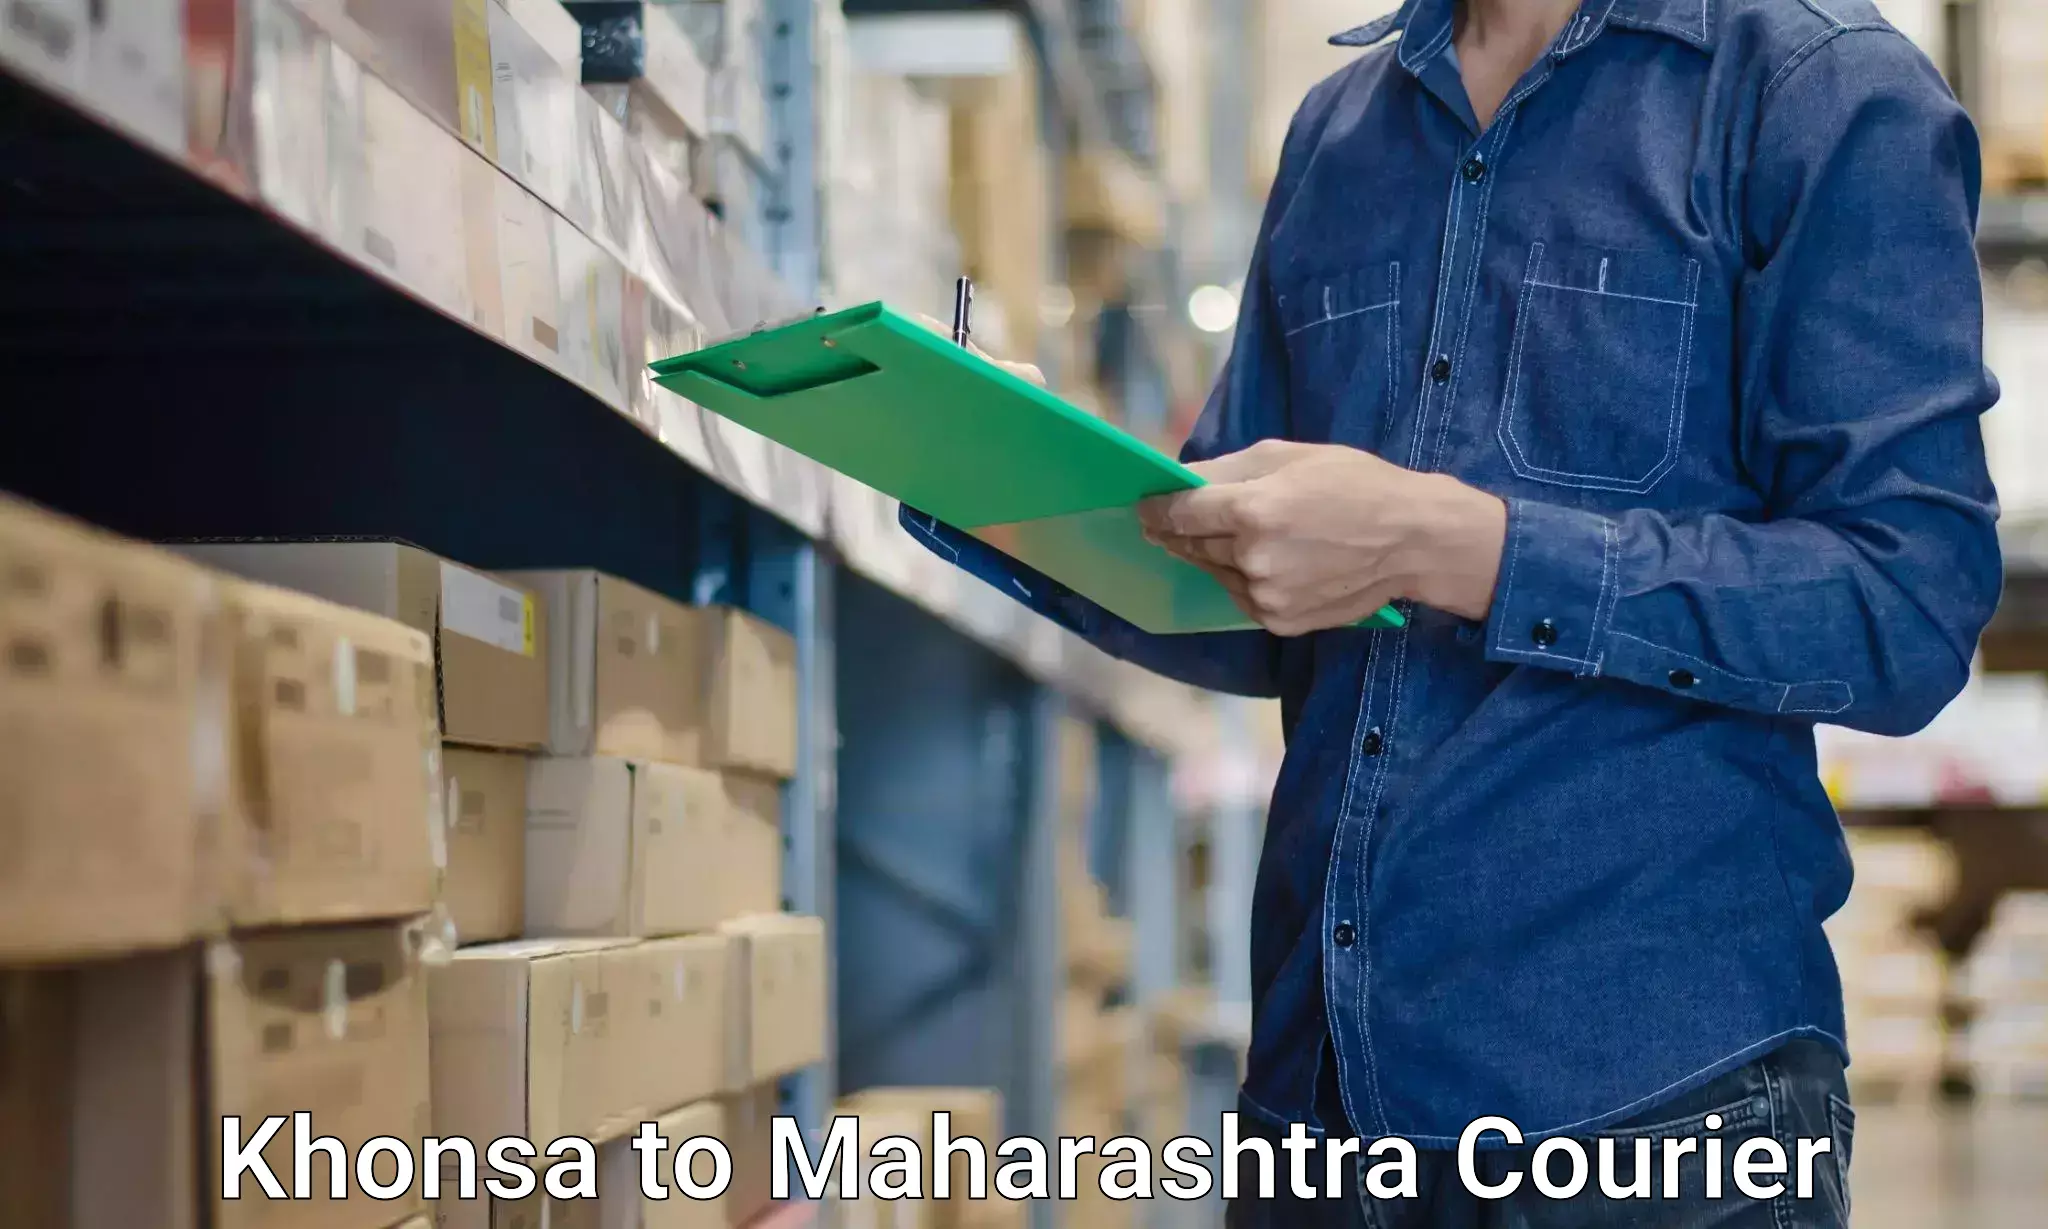 Furniture transport service Khonsa to Maharashtra